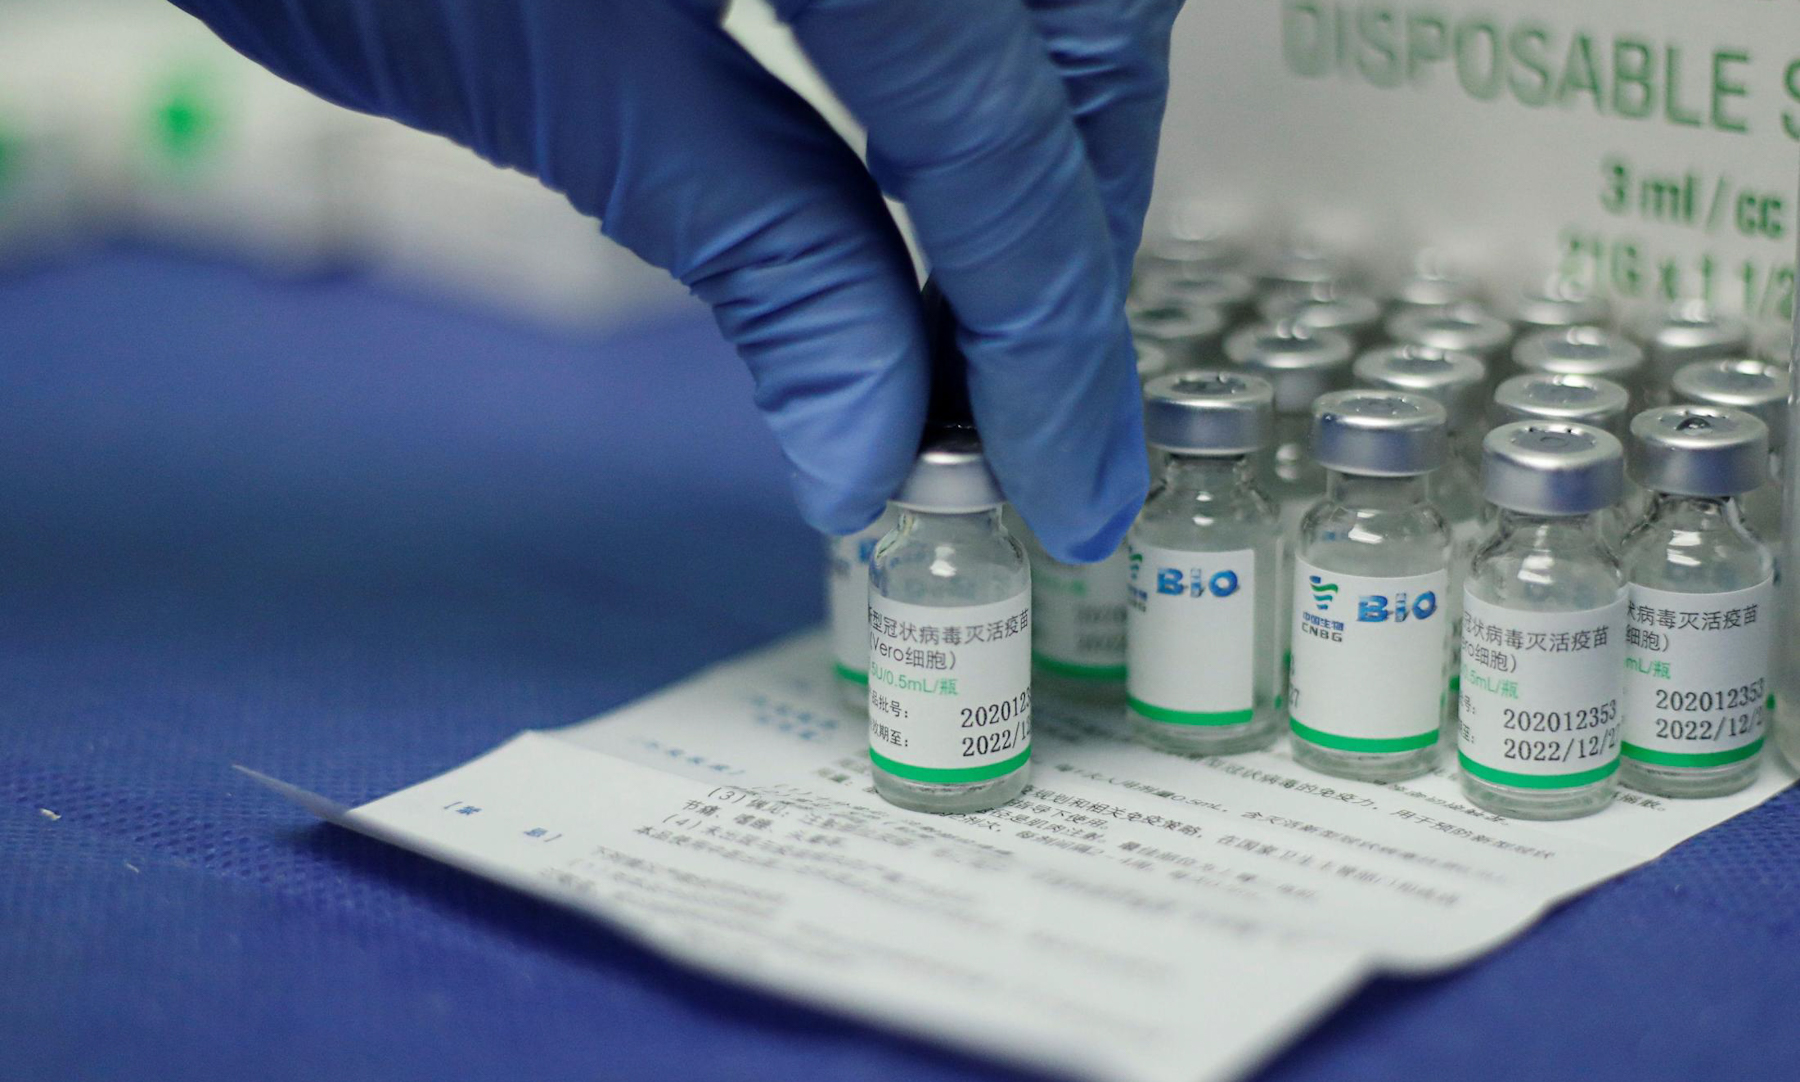 Vaccine Sinopharm tại trung tâm y tế ở Caracas, Venezuela hồi tháng 3/2021. Ảnh: Reuters.